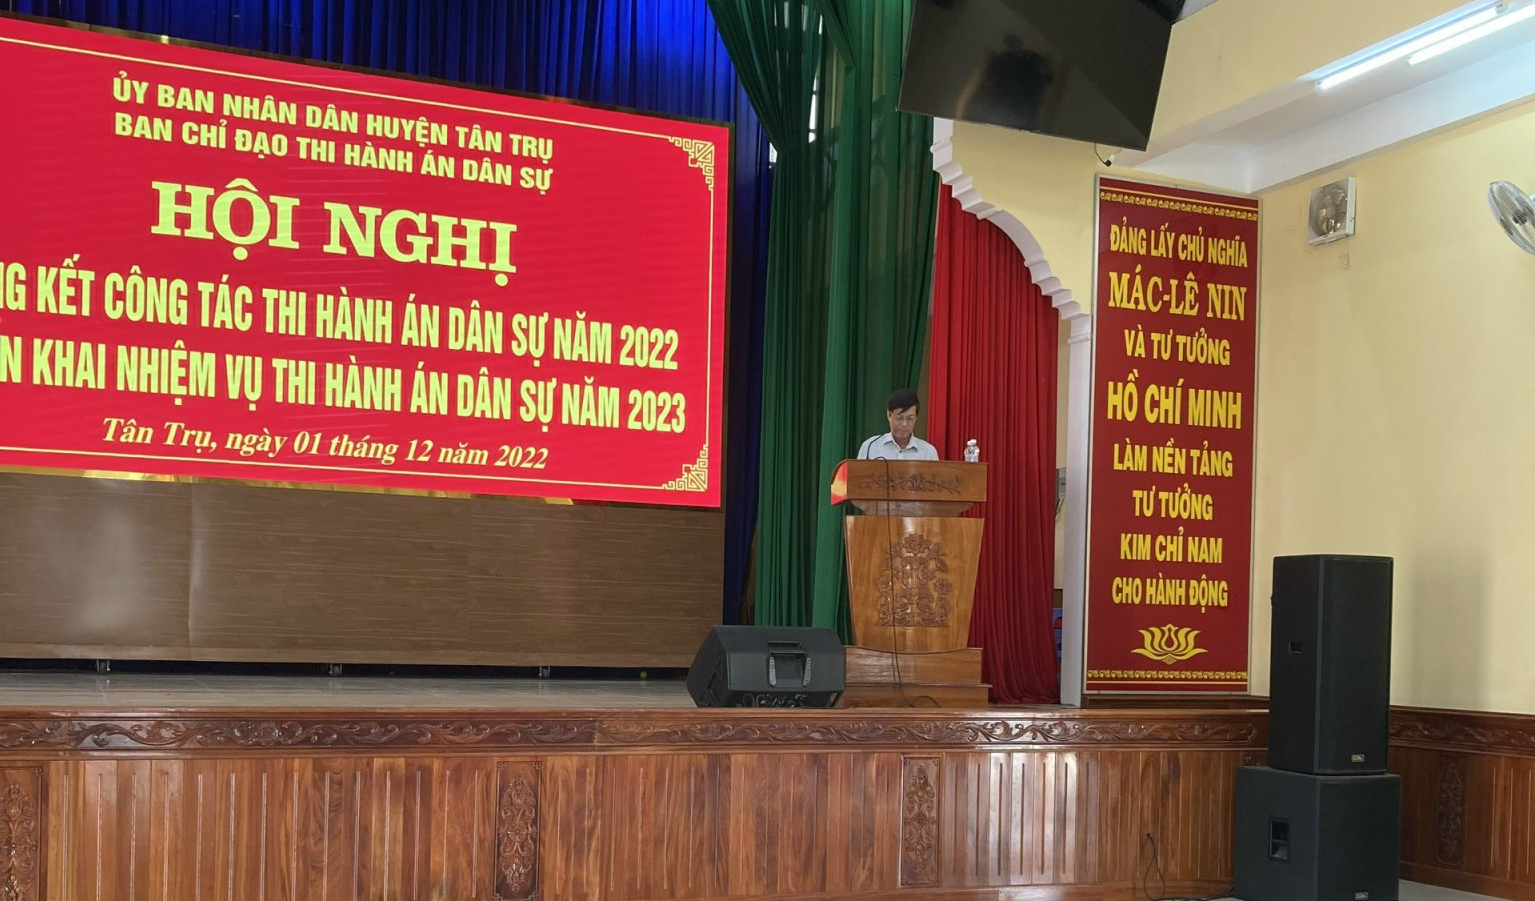 Tân Trụ: Ban chỉ đạo thi hành án dân sự huyện Tân Trụ tổ chức hội nghị tổng kết công tác THADS năm 2022 và triển khai nhiệm vụ năm 2023